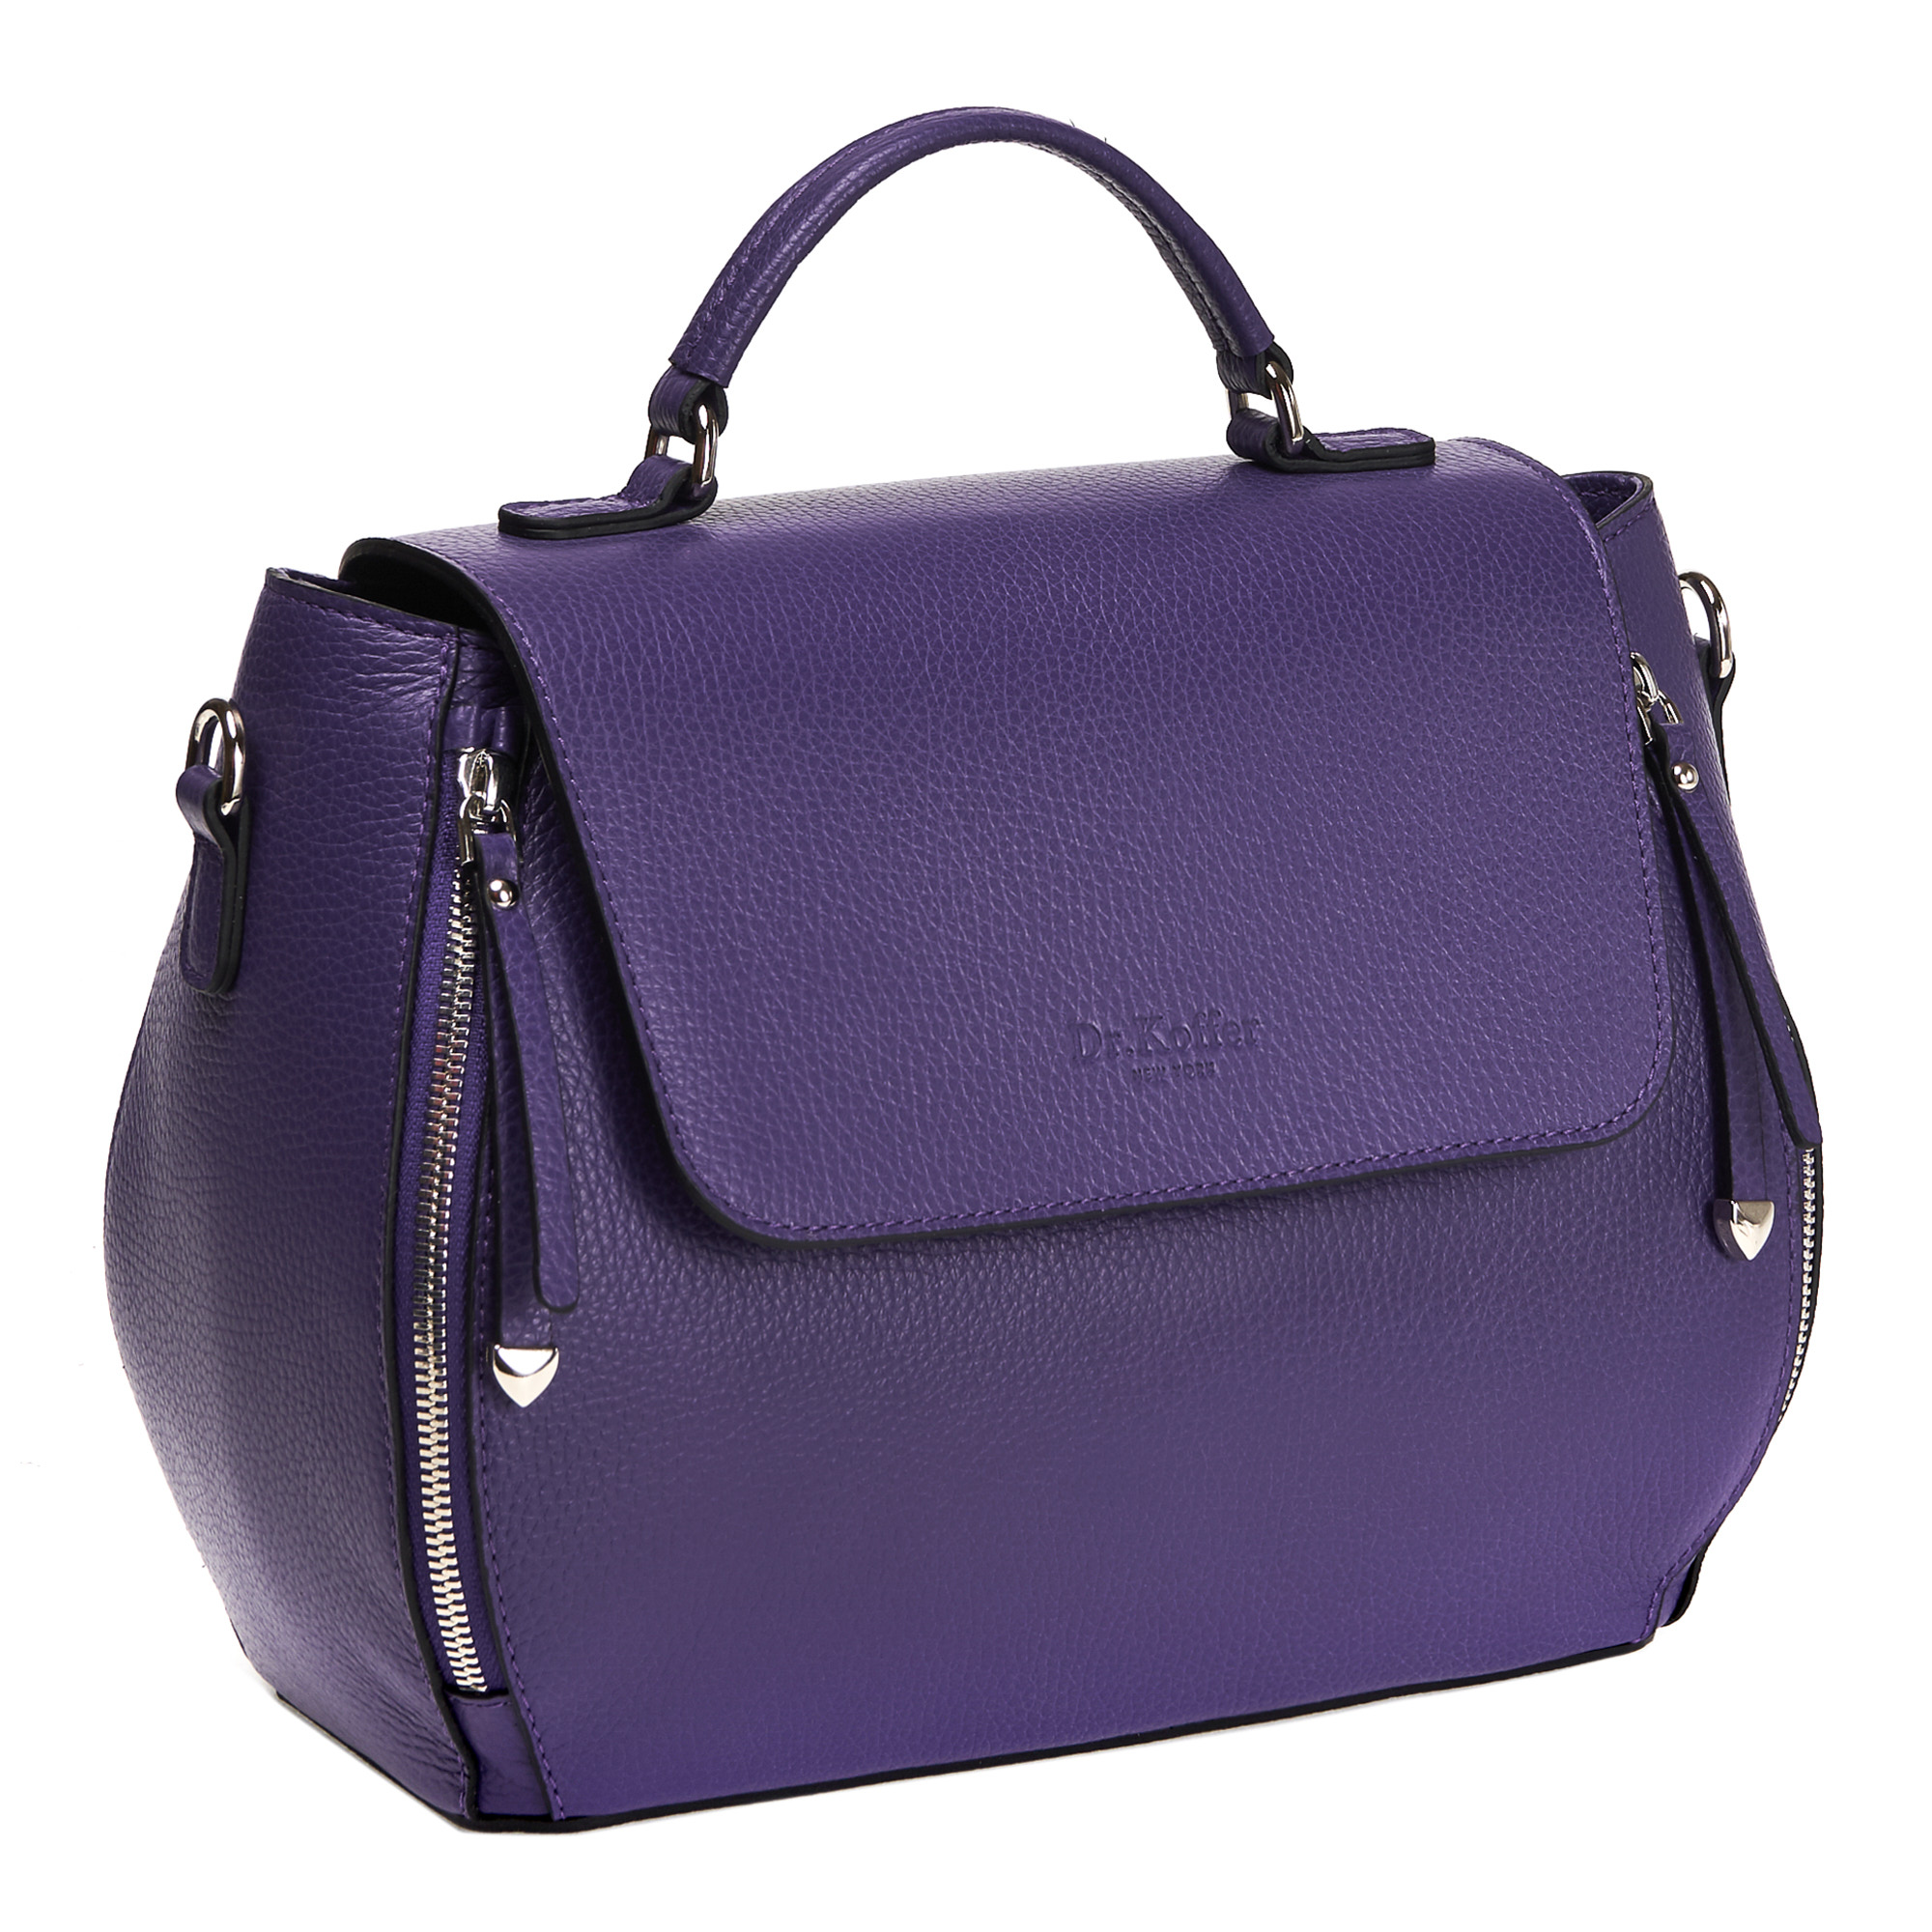 Др.Коффер 5627S-89 сумка женская, цвет фиолетовый - фото 1